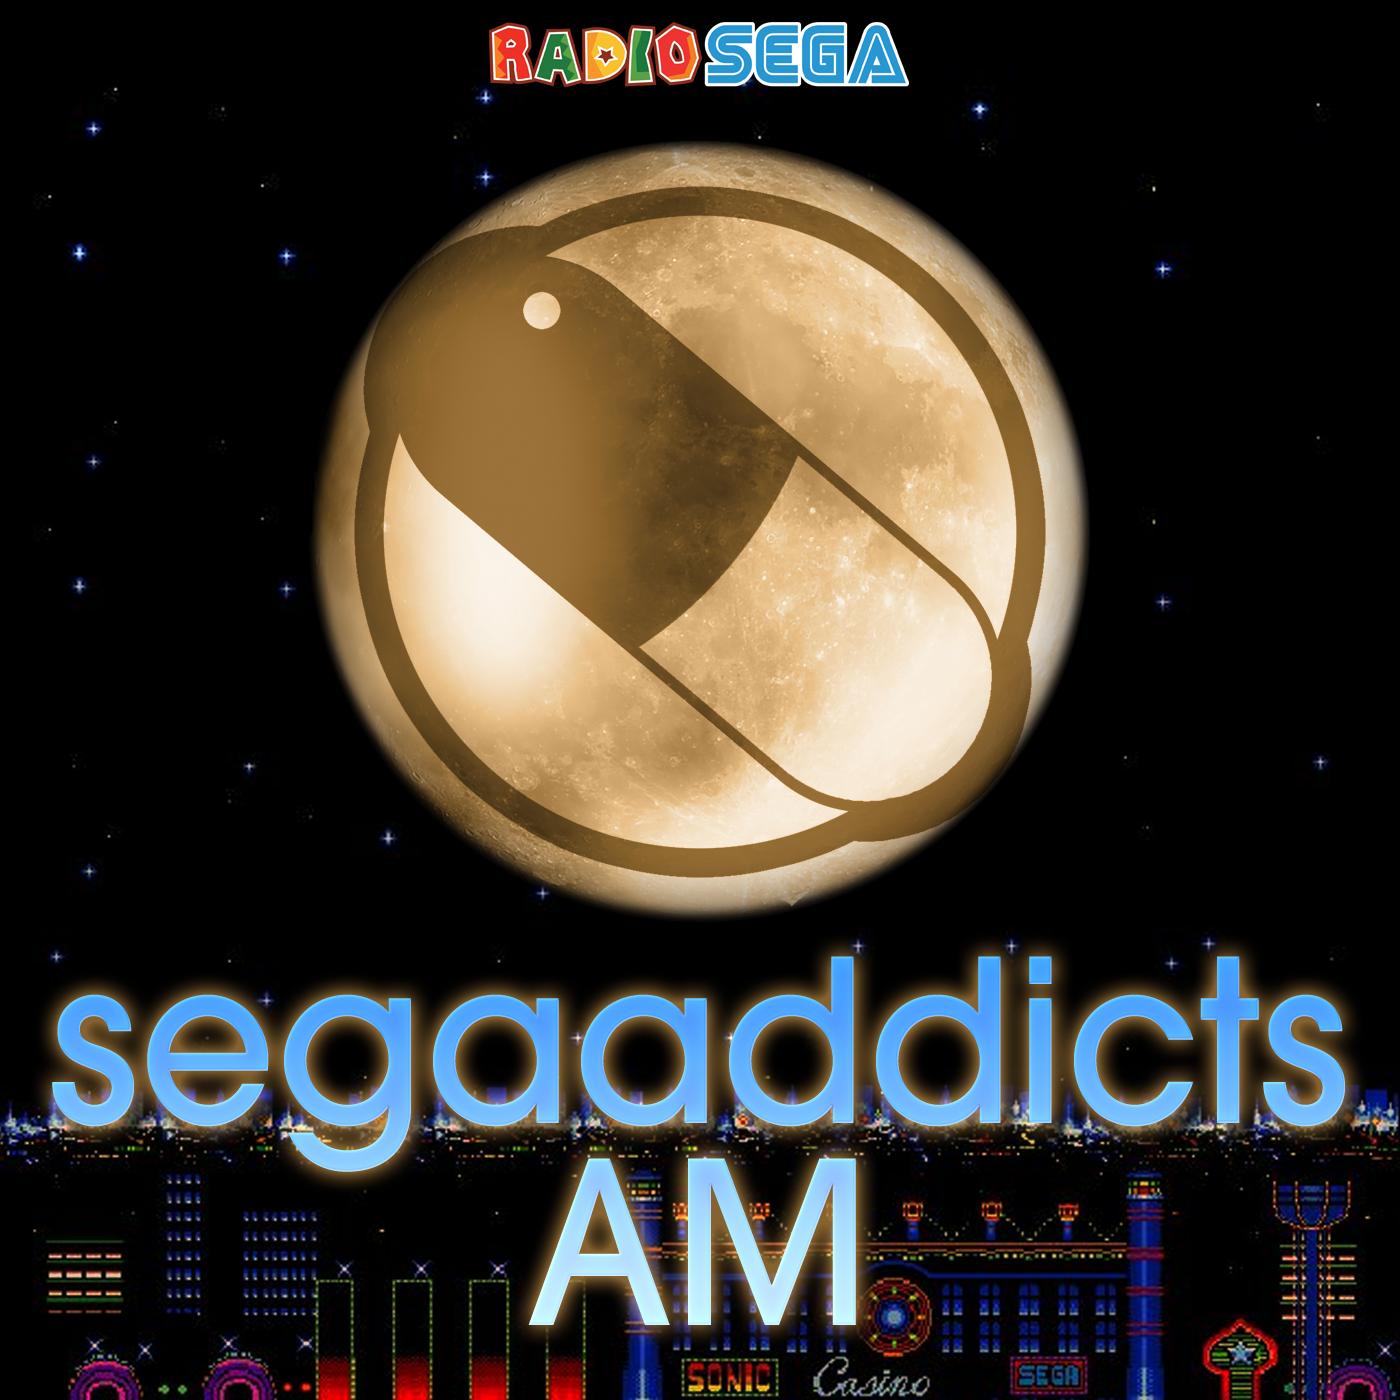 Sega Addicts AM